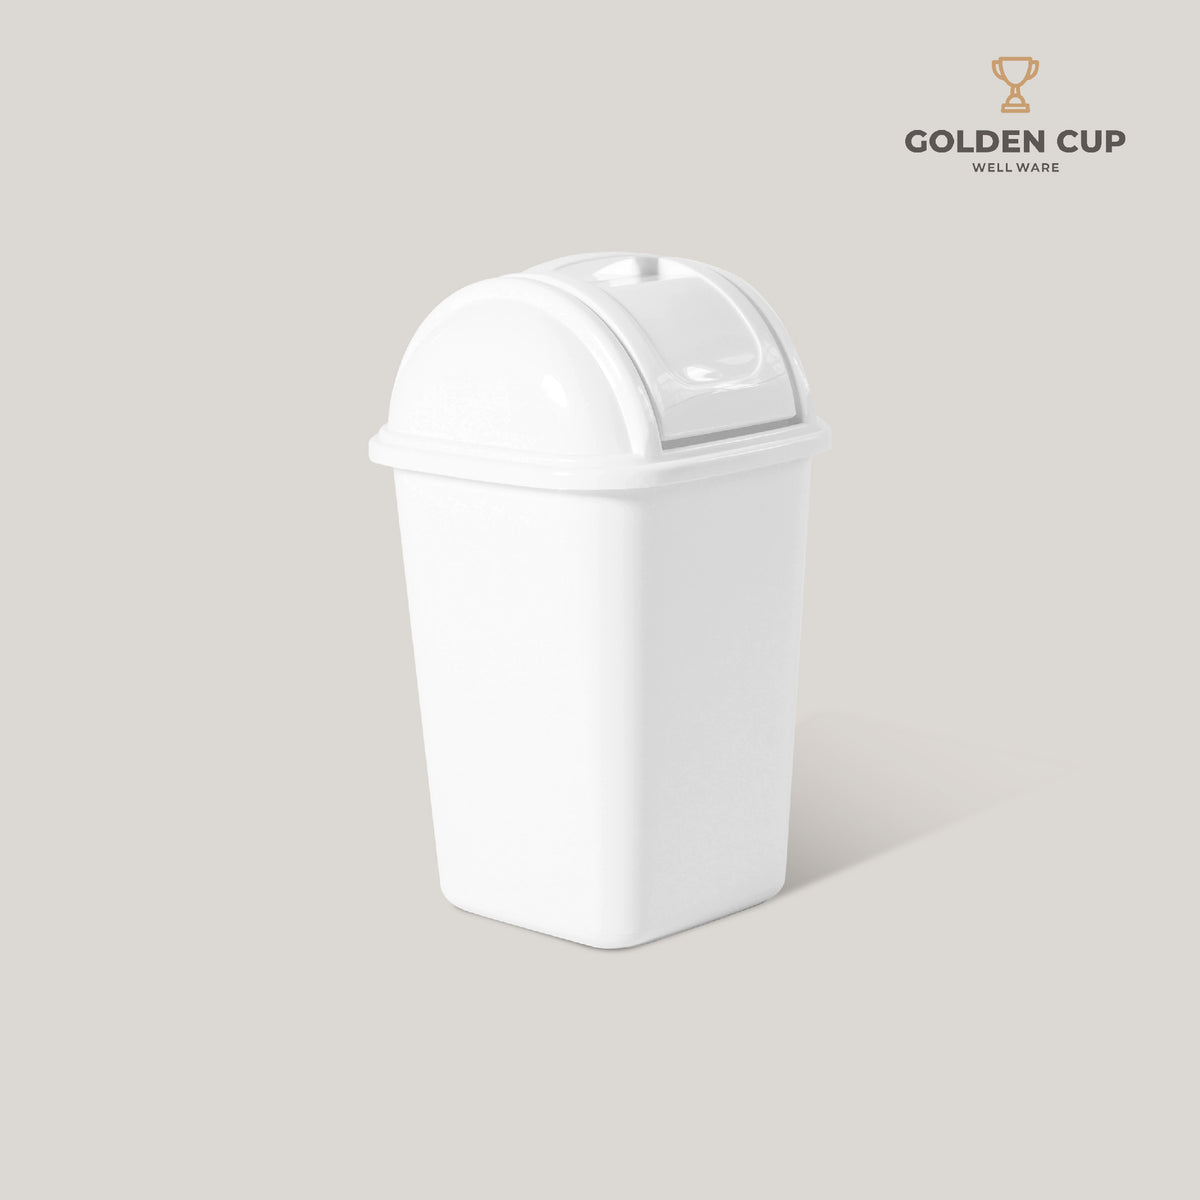 GOLDEN CUP ถังขยะฝาสวิง 12 ลิตร AG212